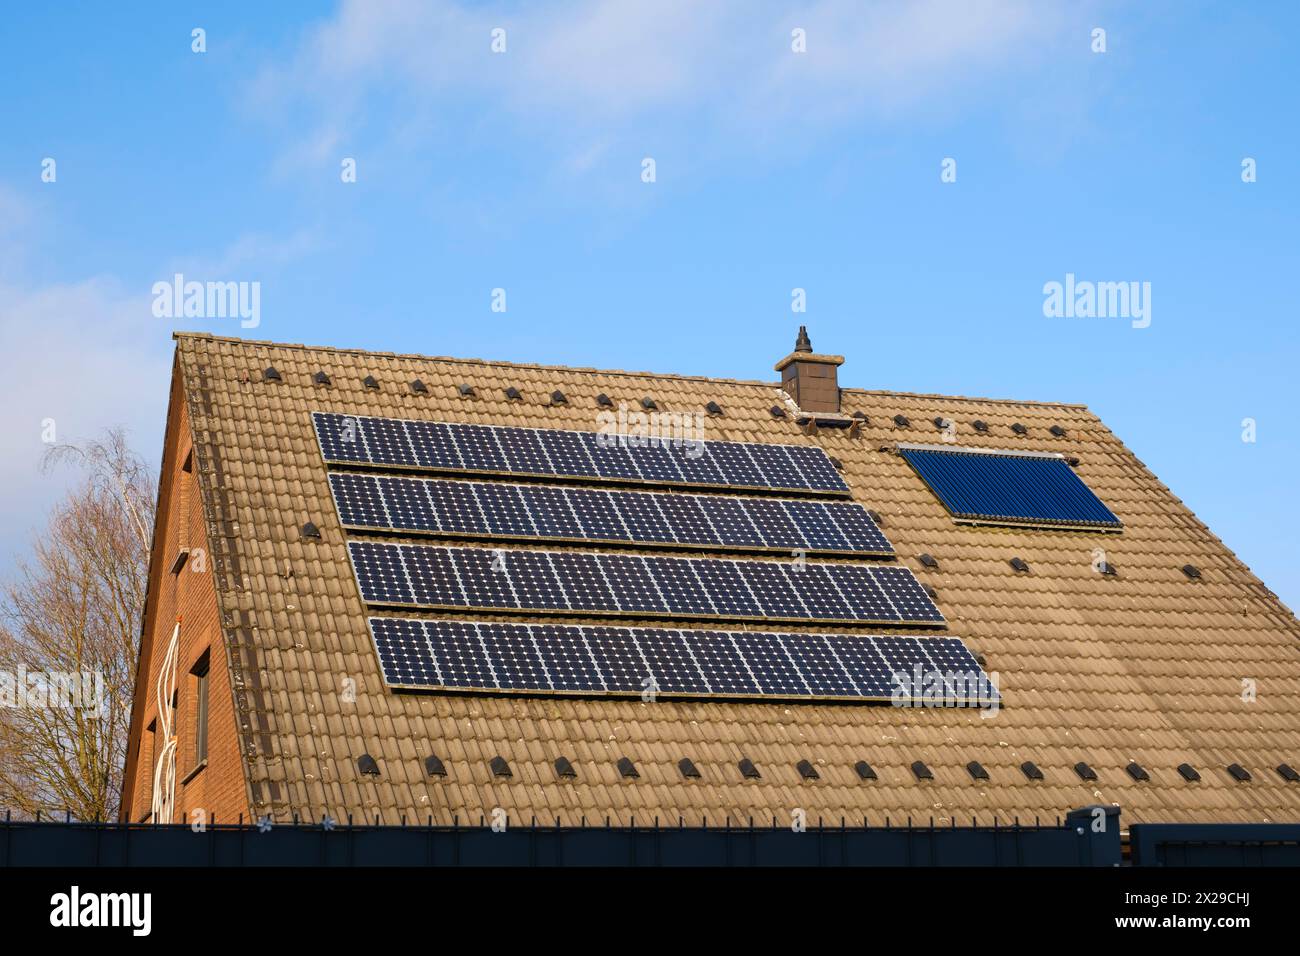 Toit avec système photovoltaïque solaire Banque D'Images